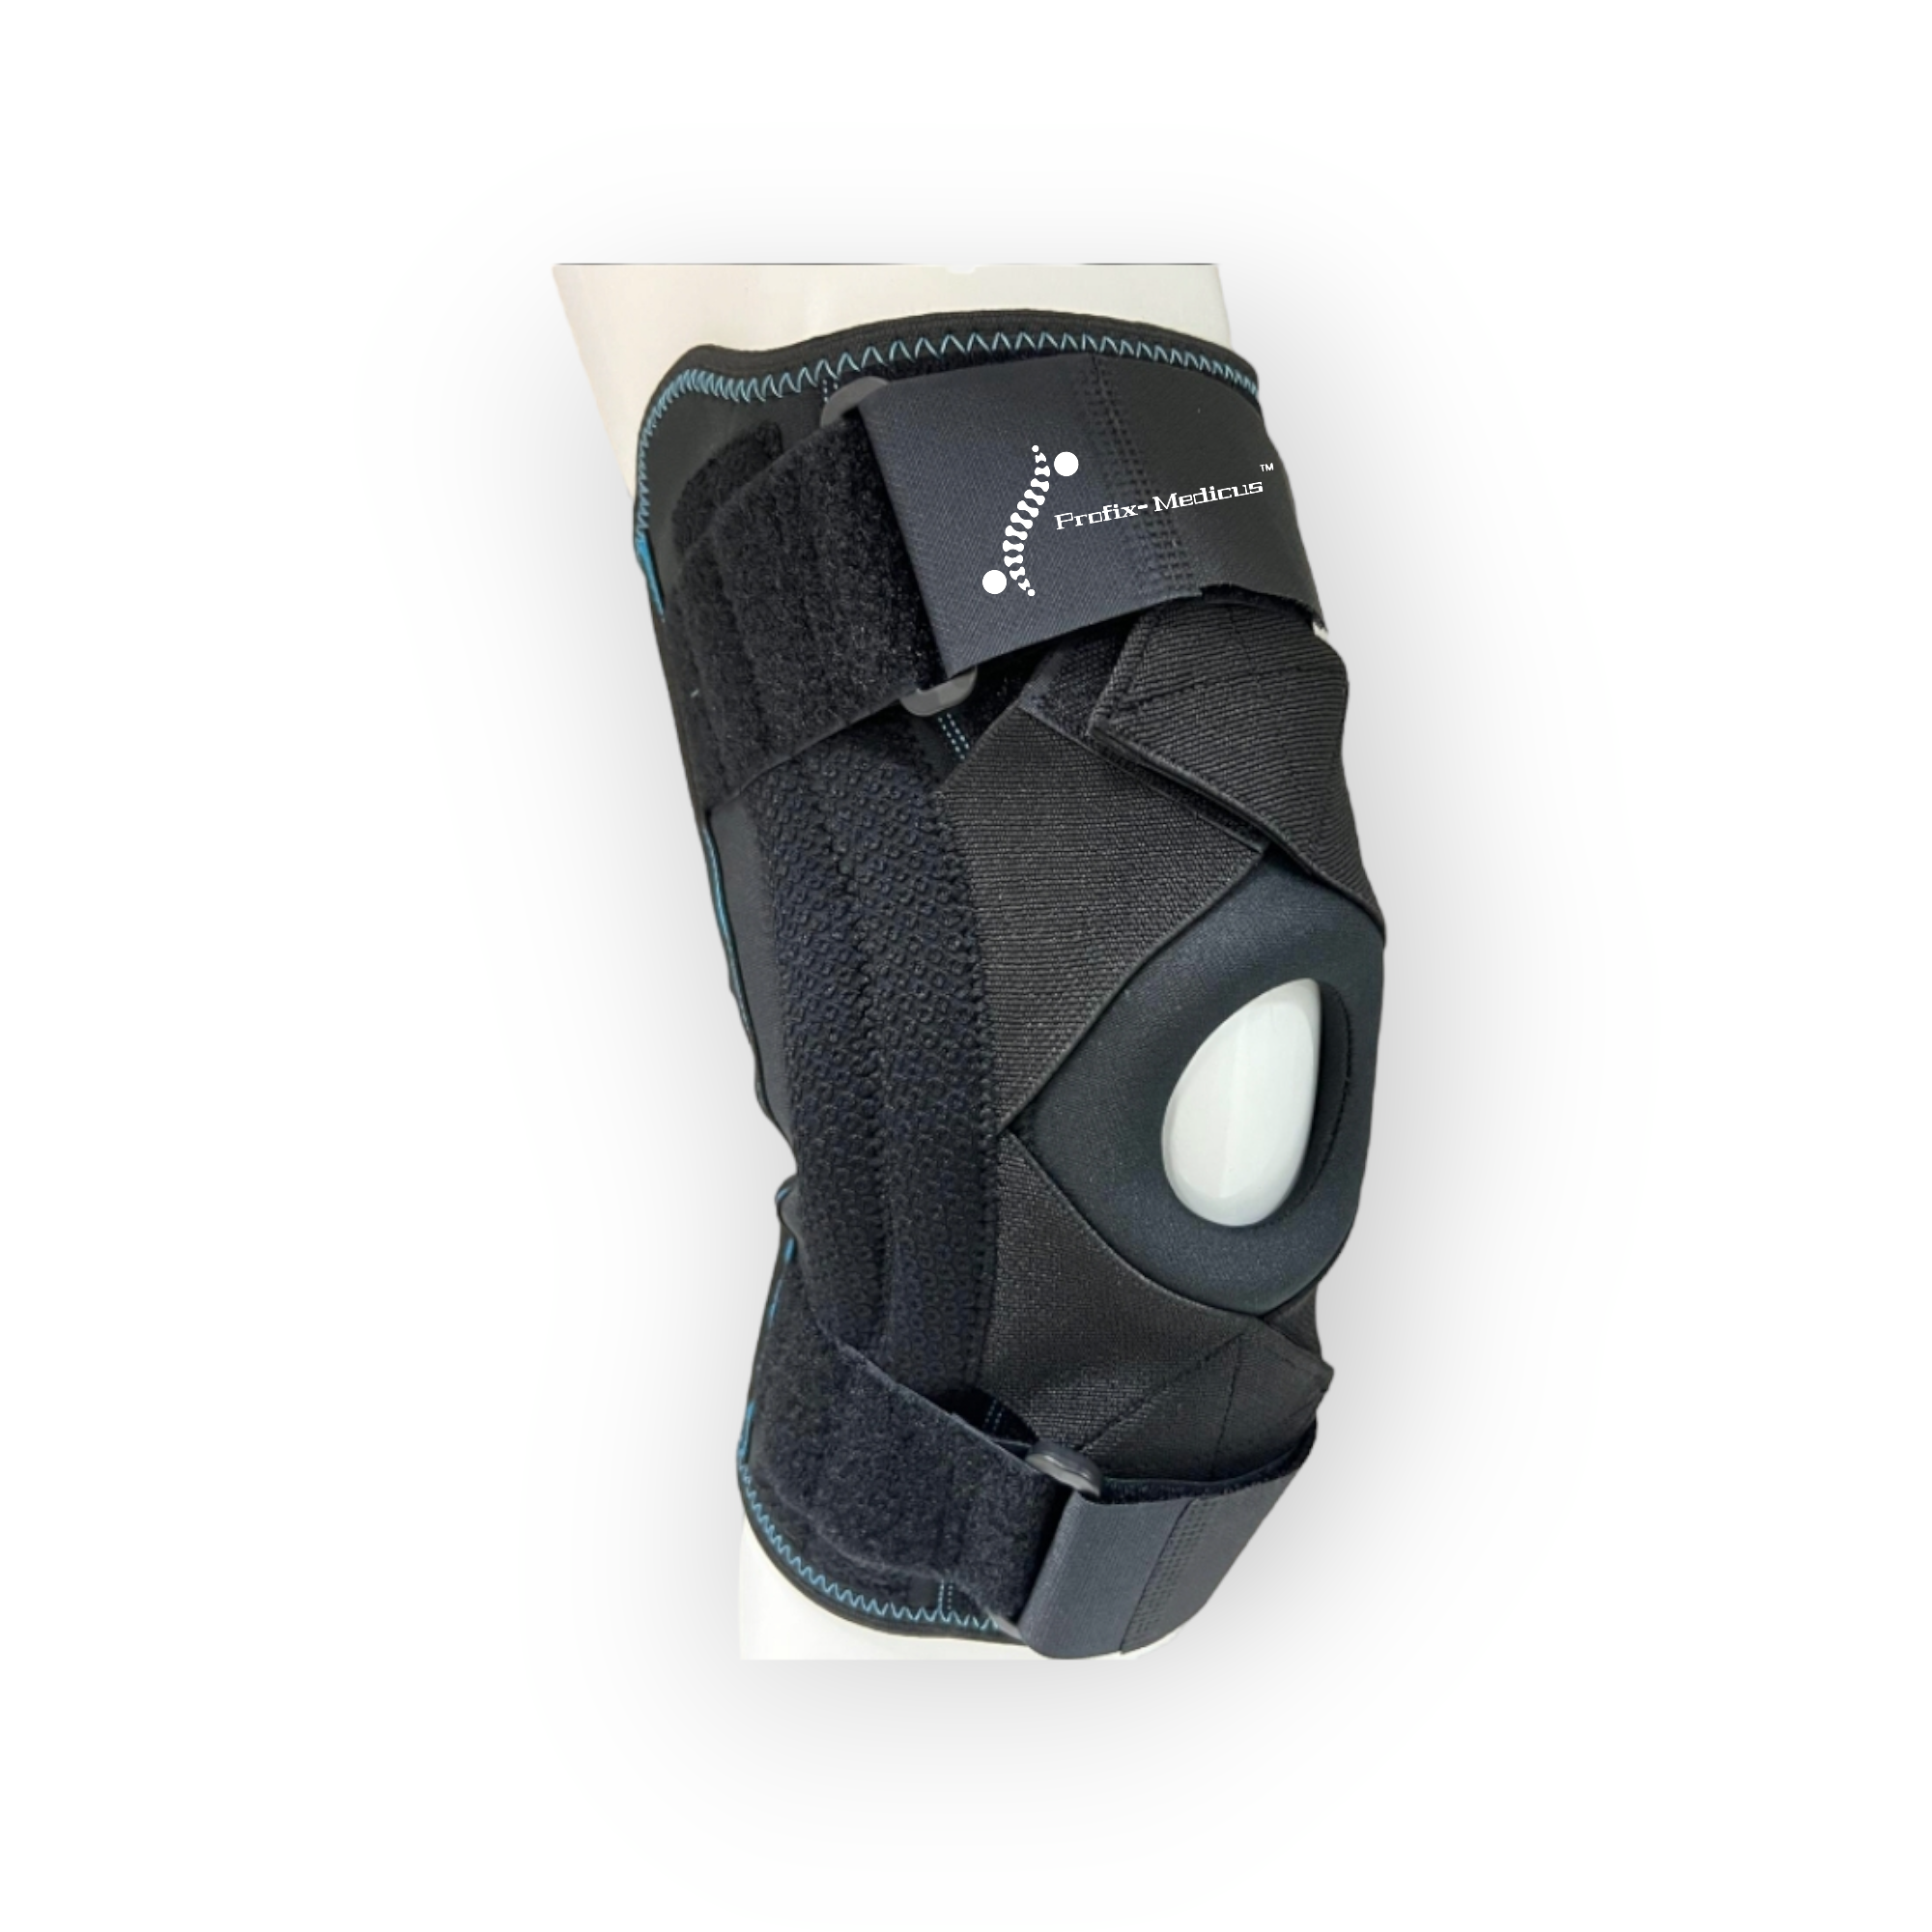 Profix-Medicus™ Adjustable/Breathable Knee Brace